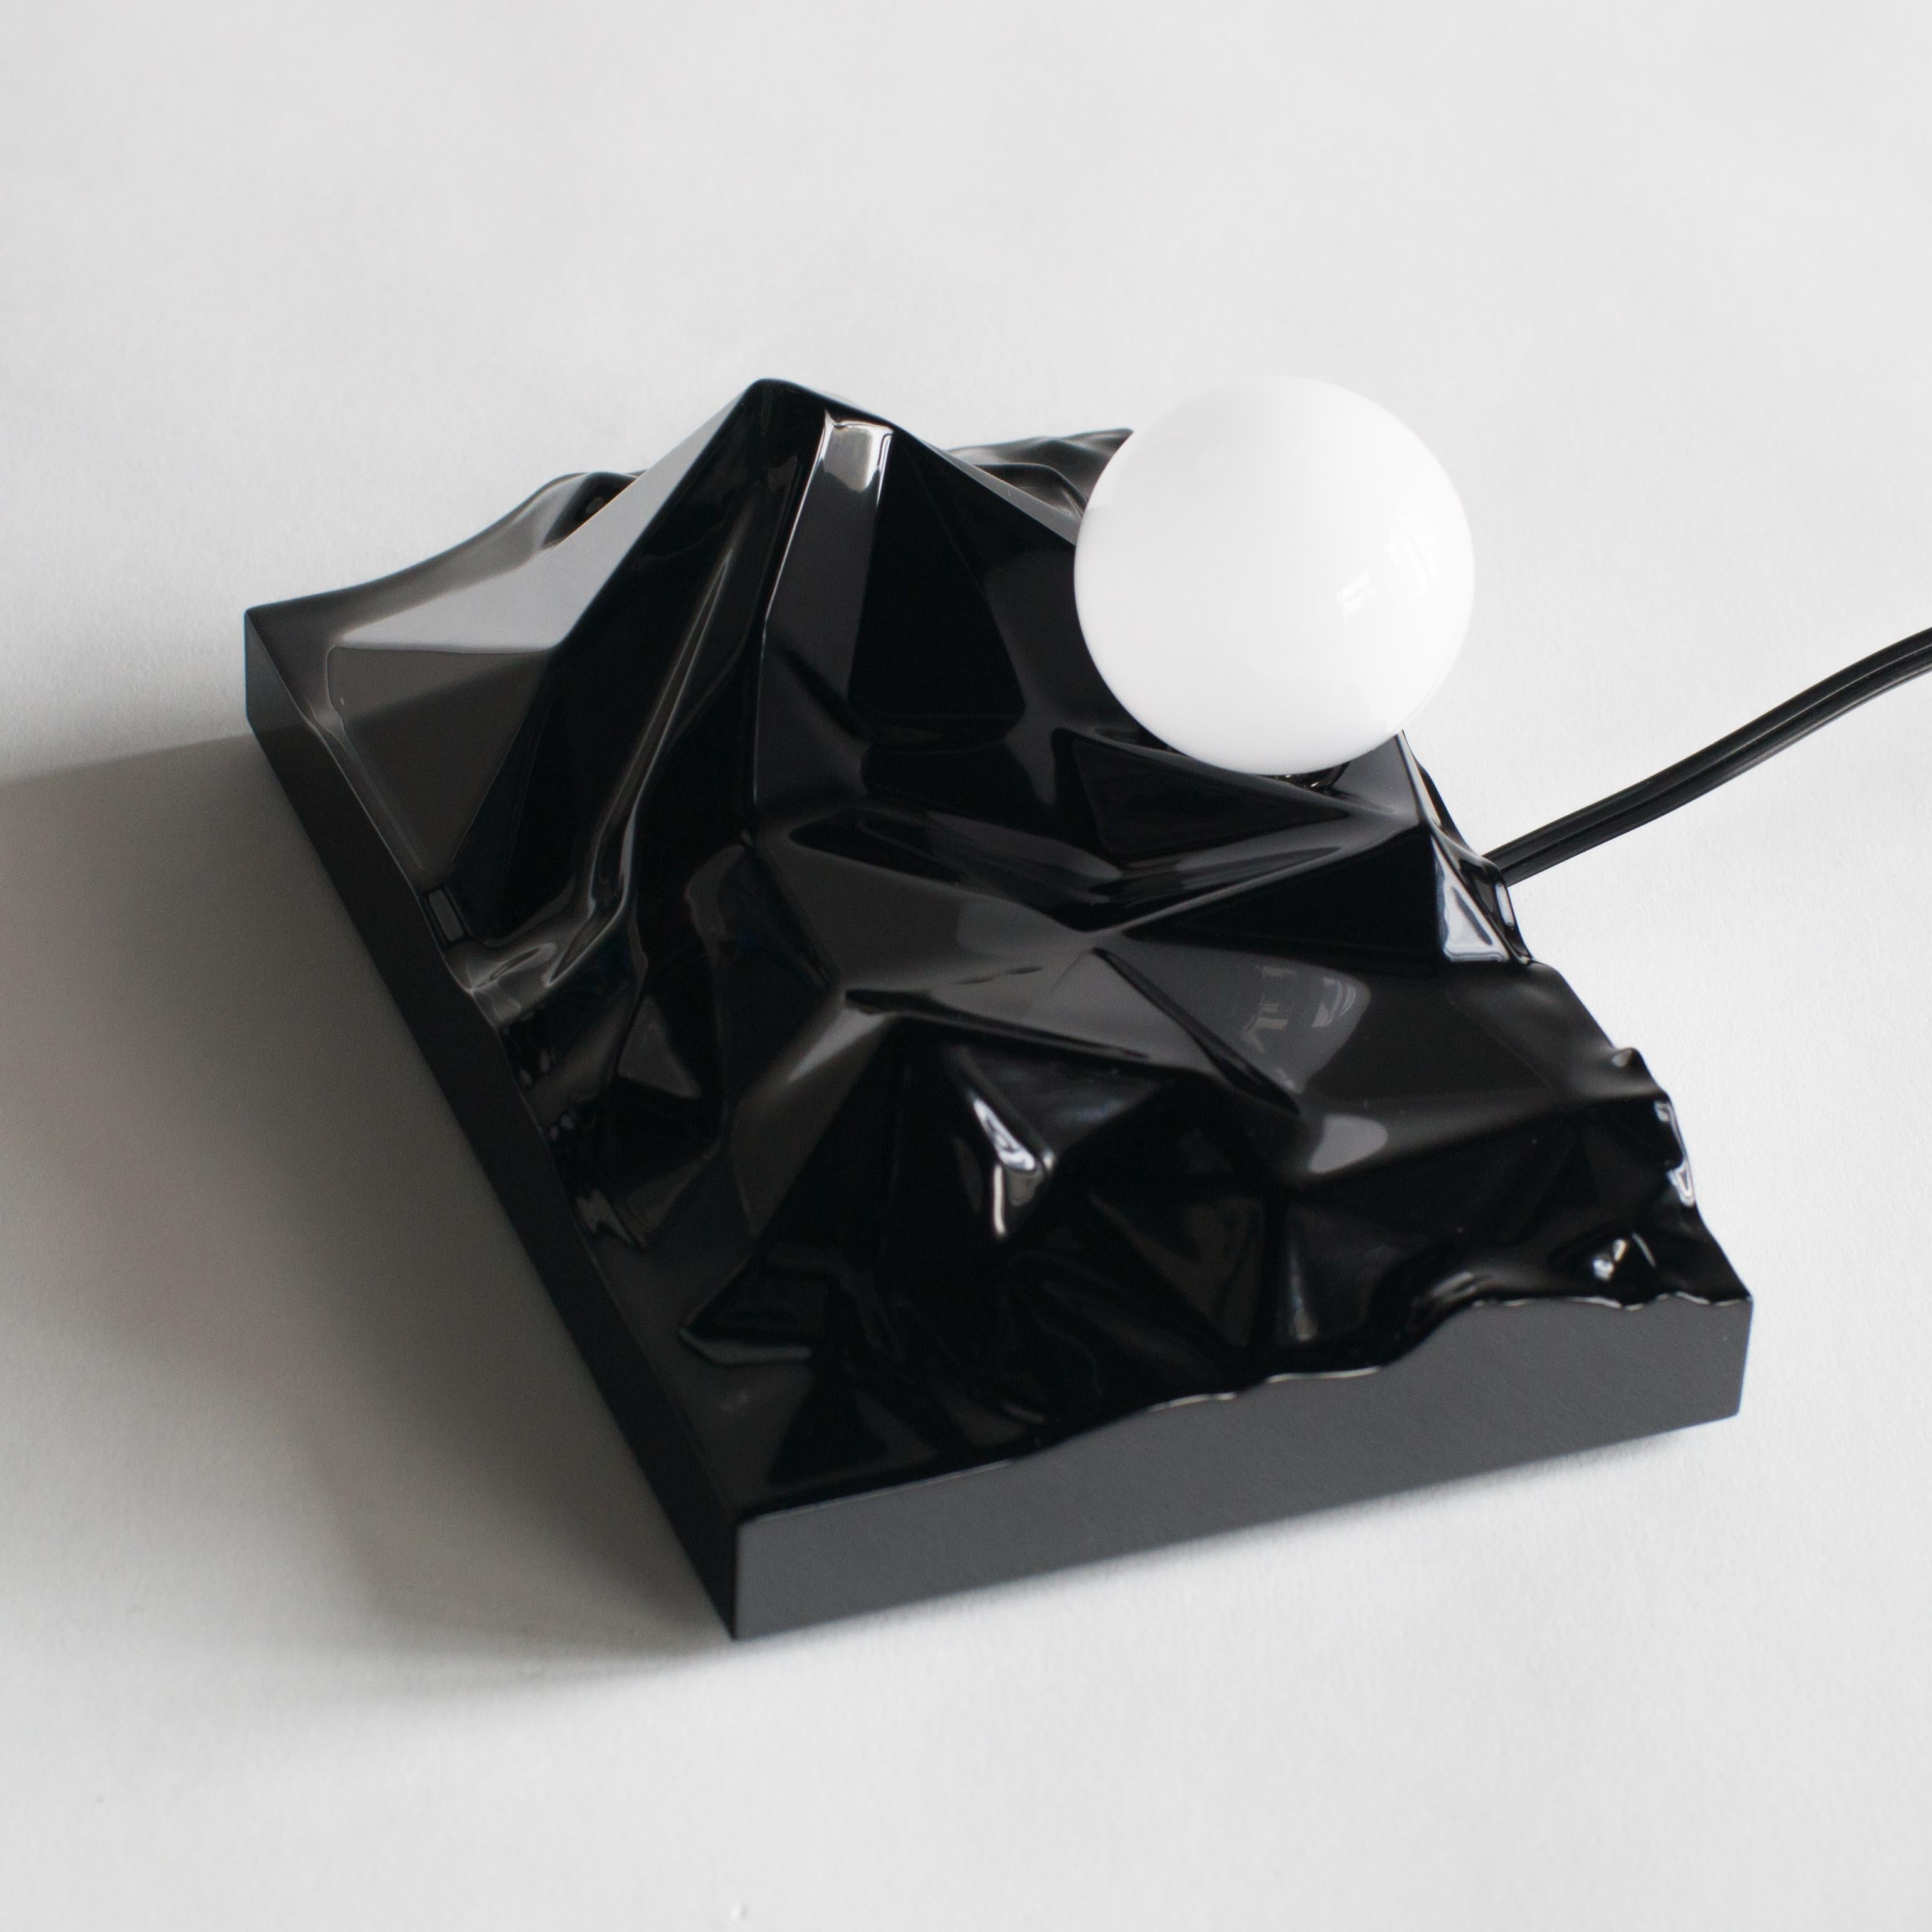 Sunrising Lamp Satoshi Itasaka Urushi Object Contemporary Zen Japanese 1